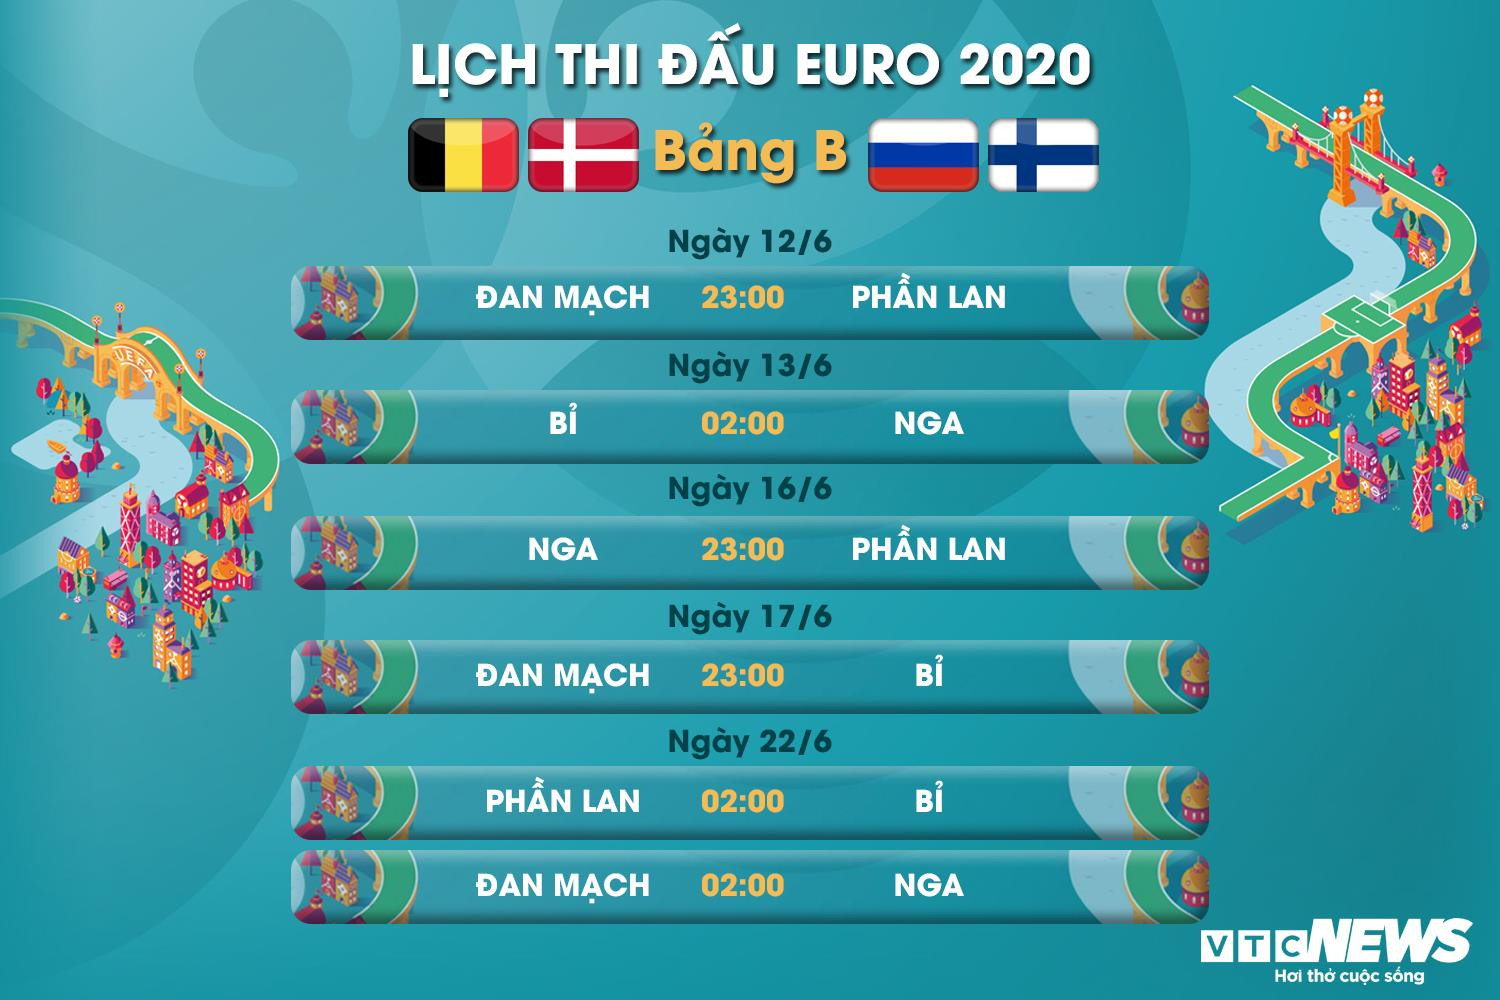 Lịch thi đấu EURO 2020 bảng B - 1